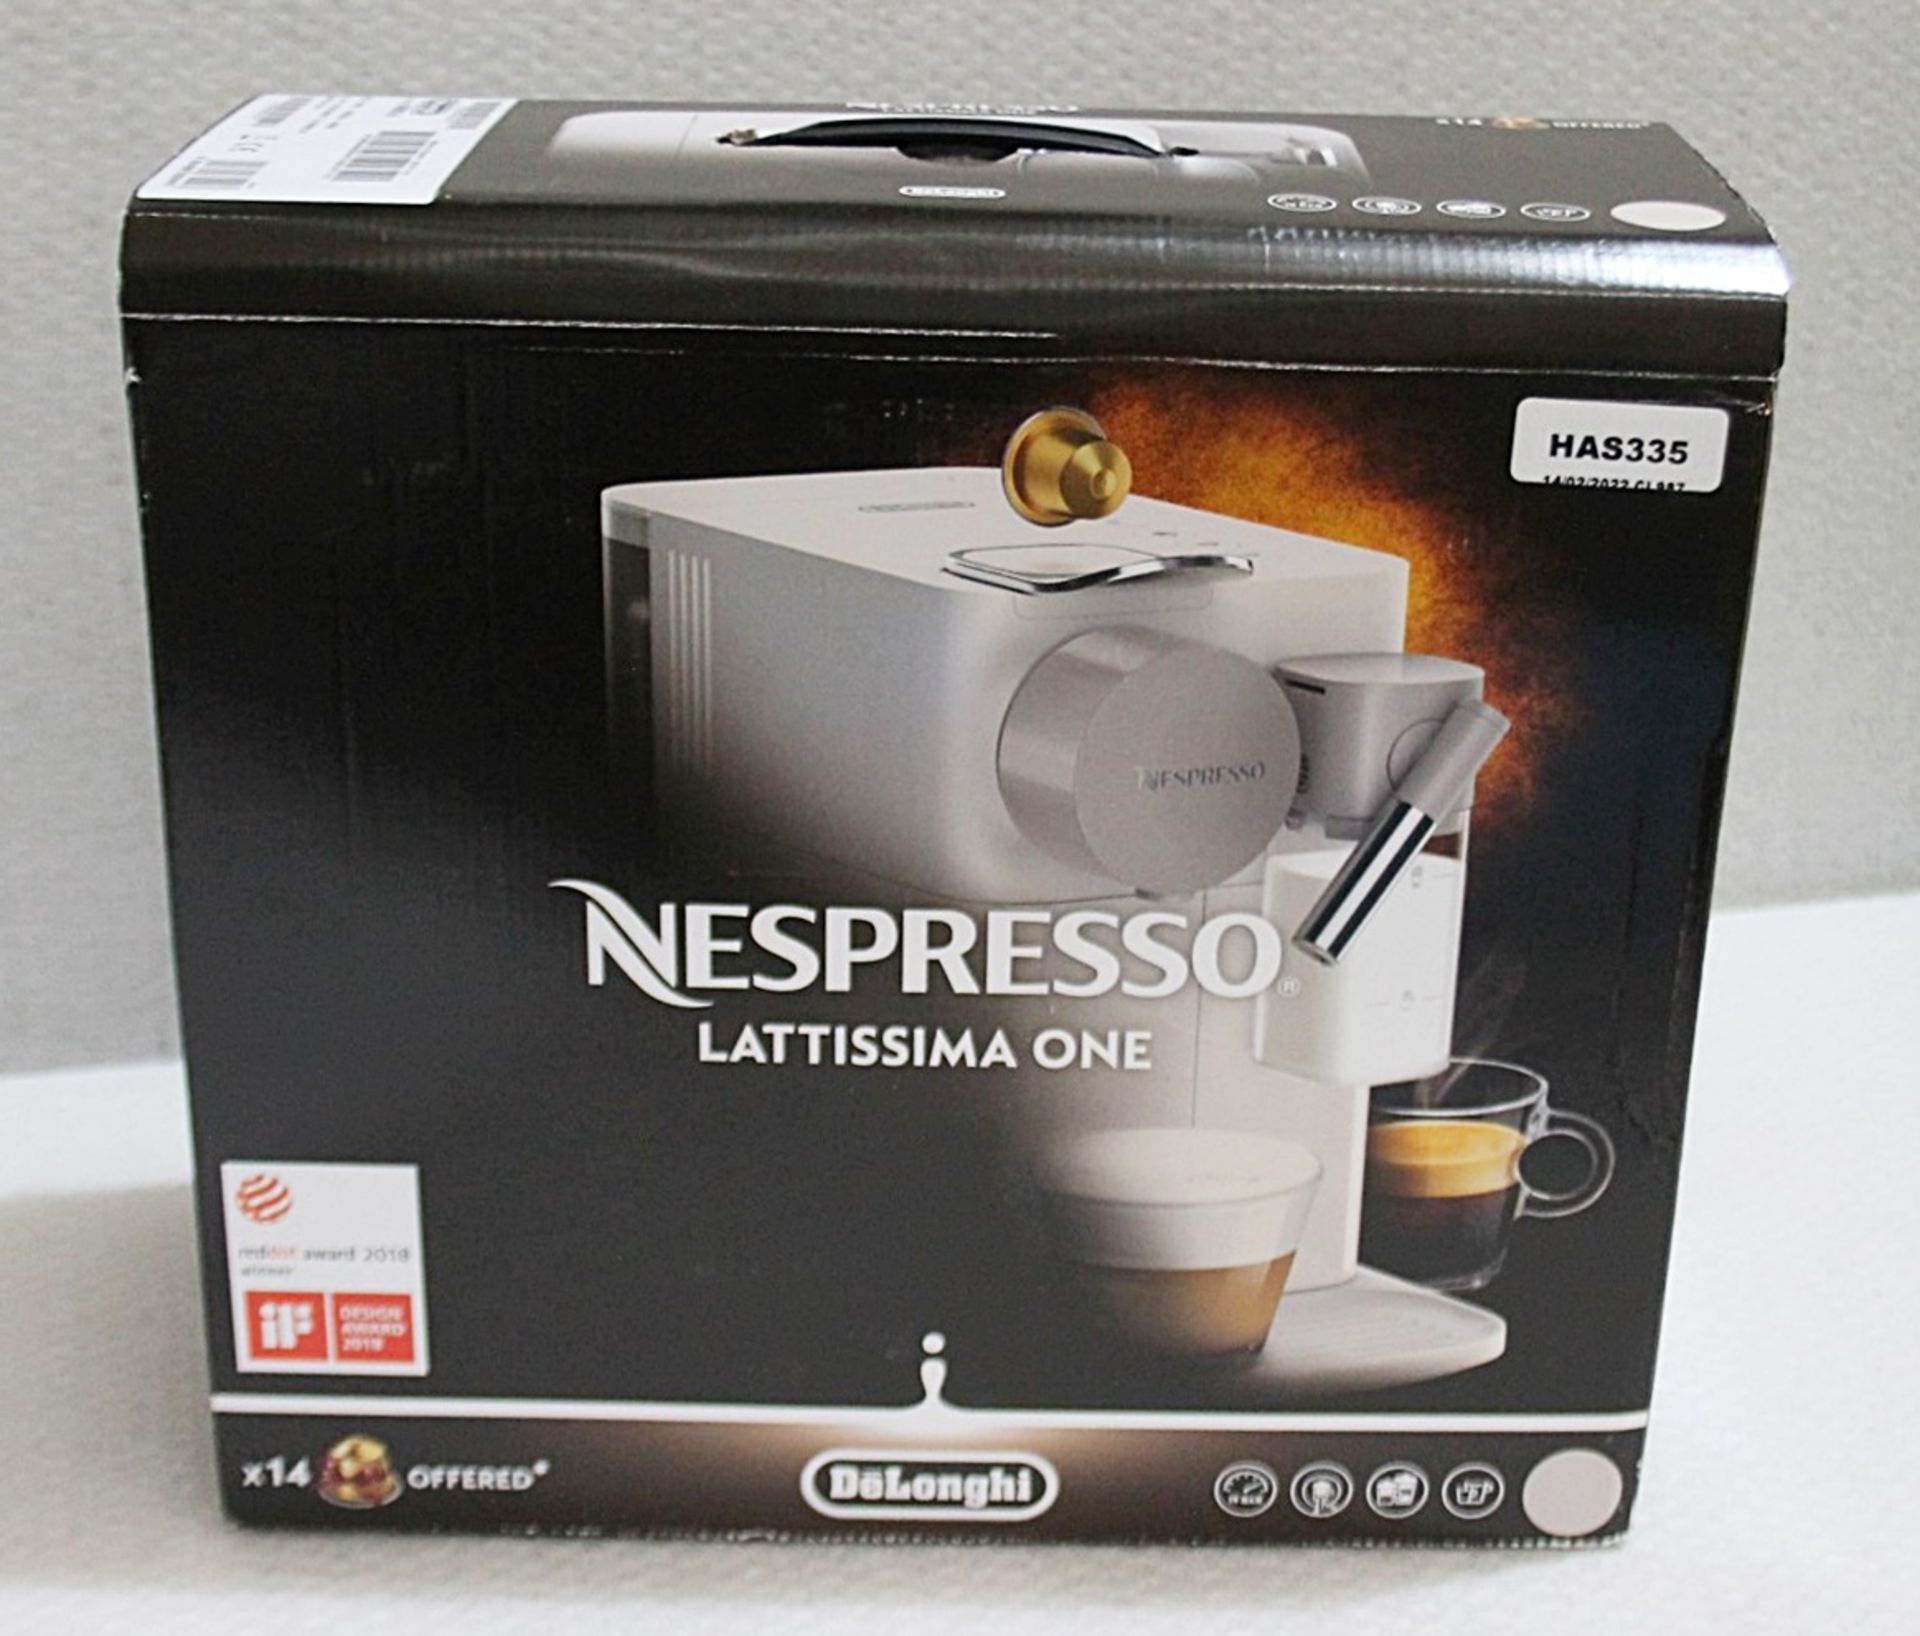 1 x DeLonghi Lattissima One Nespresso Coffee Machine - Original Price £258.00 - Boxed - Image 2 of 18